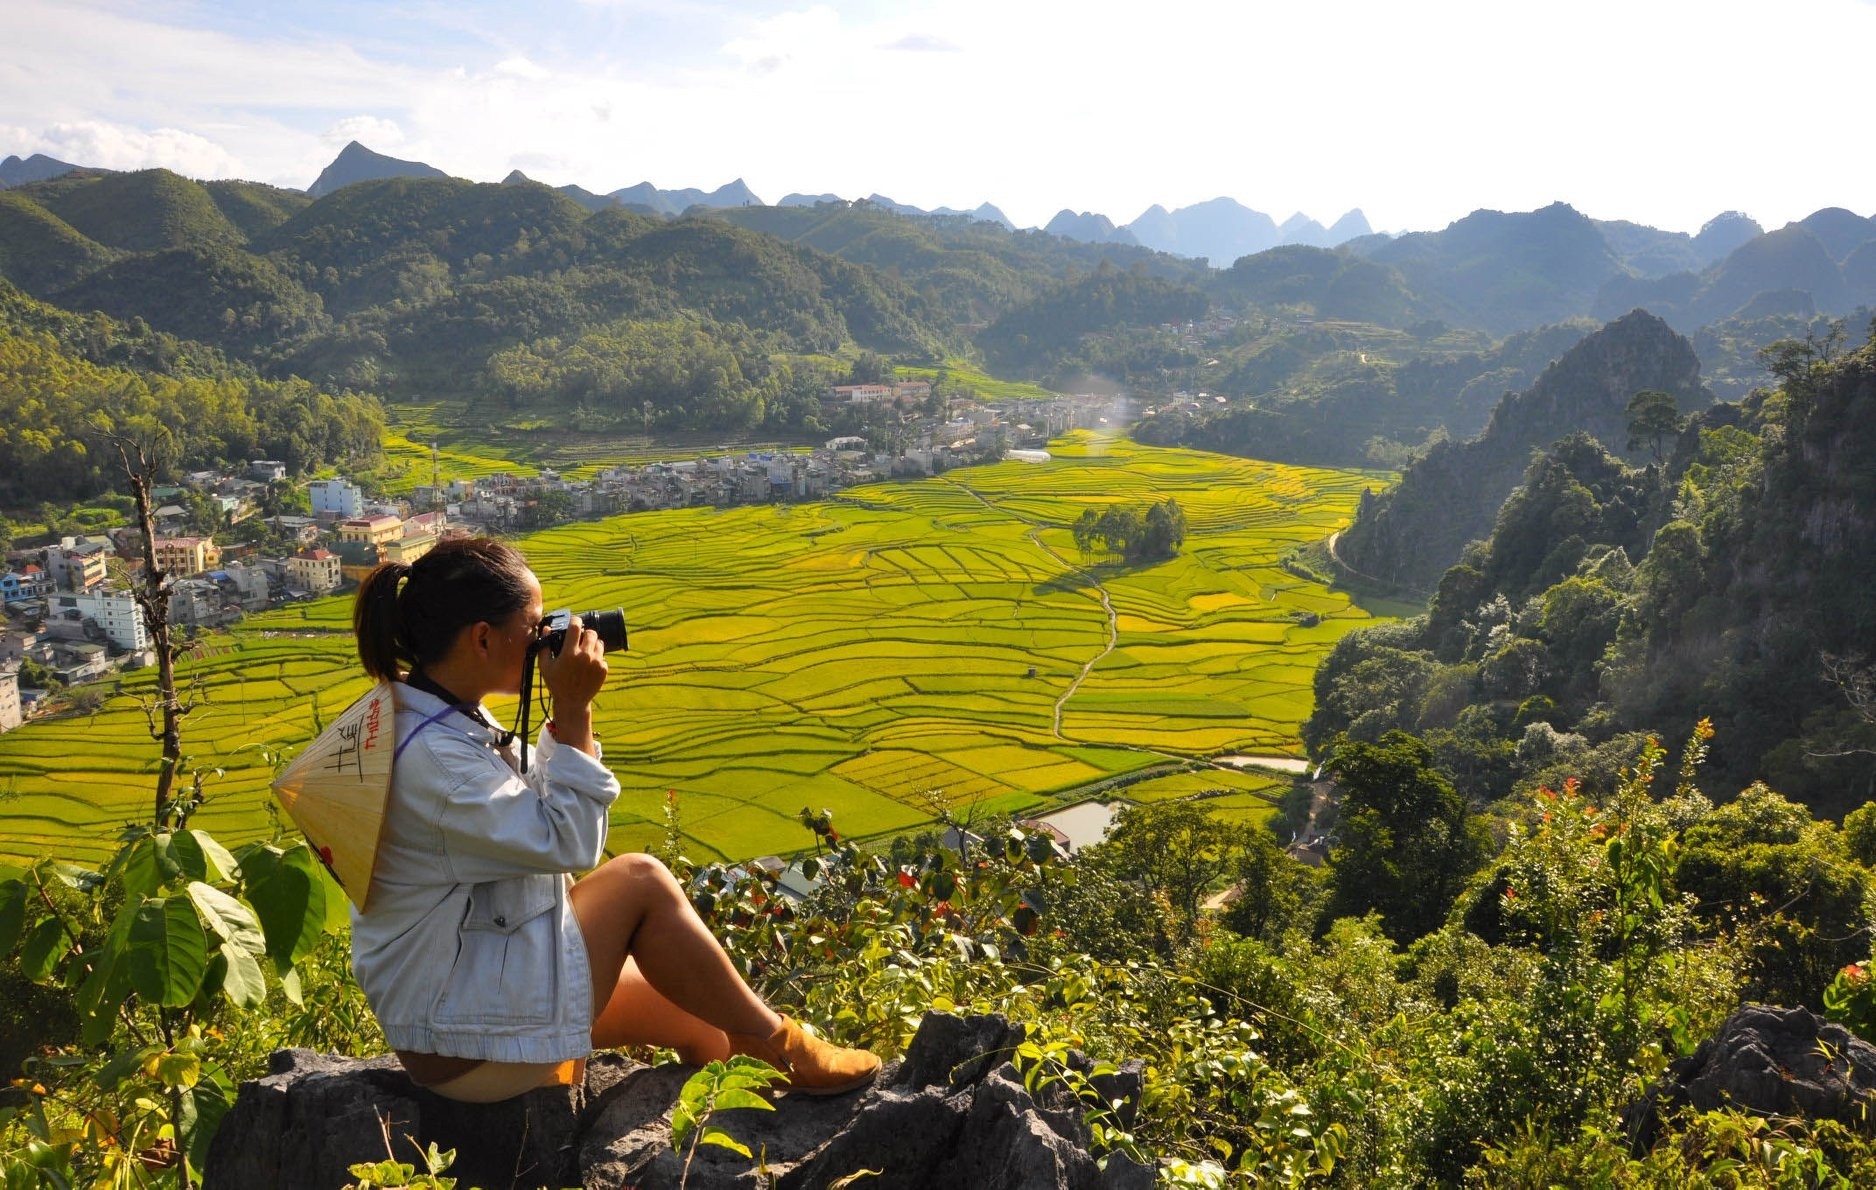 Nữ du khách Việt ám ảnh chuyện bị gạ tình khi du lịch một mình - 2